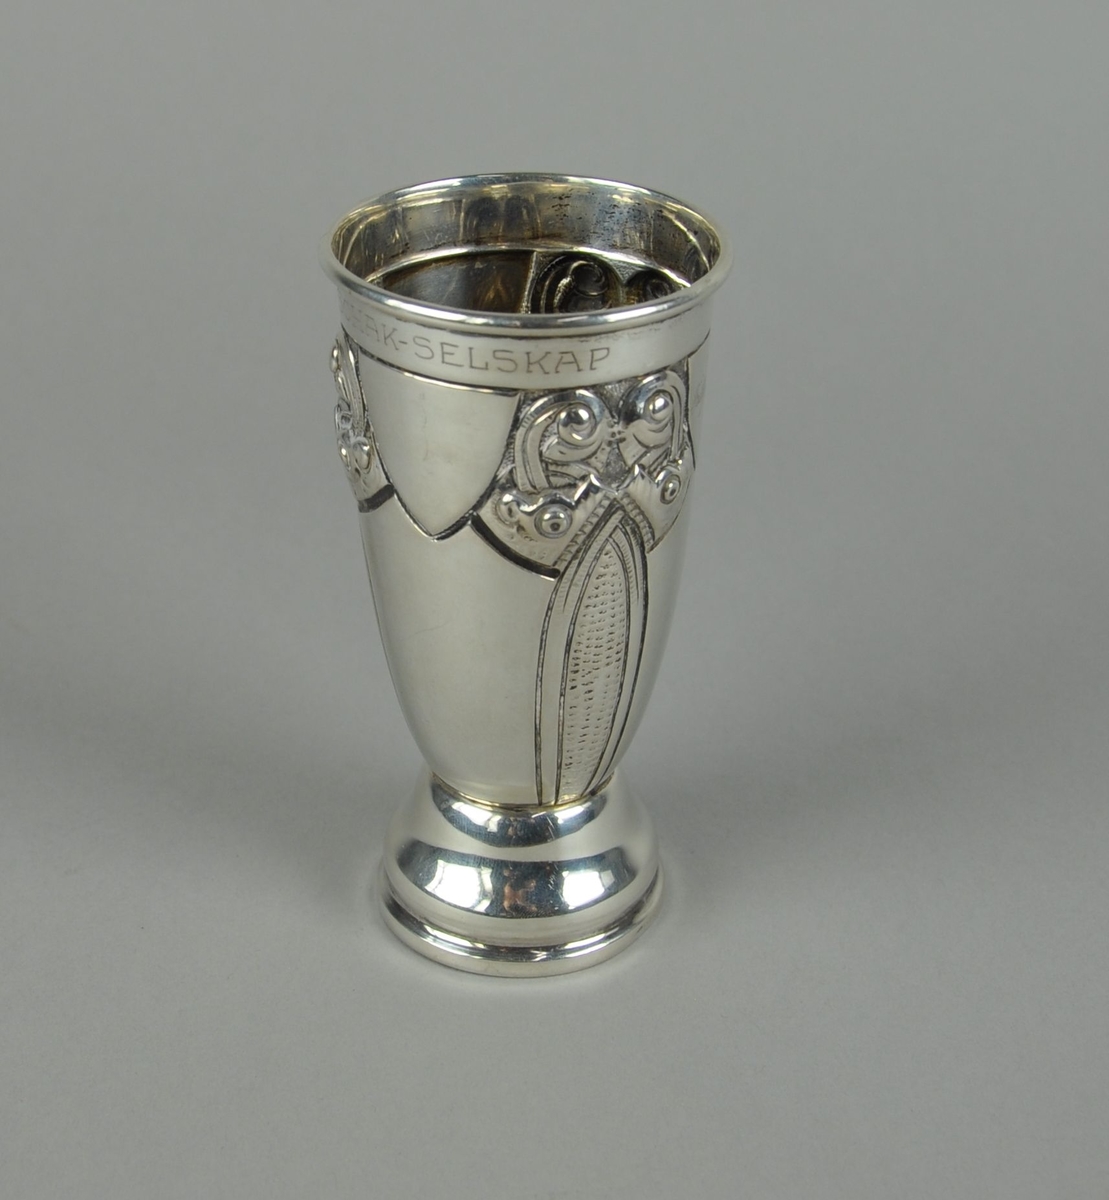 Pokal av sølv. Pokalen har sylindrisk form med innsnevret bunn. Utgående sokkel med profilert form. På korpus er det gravert dekor i dragestil.